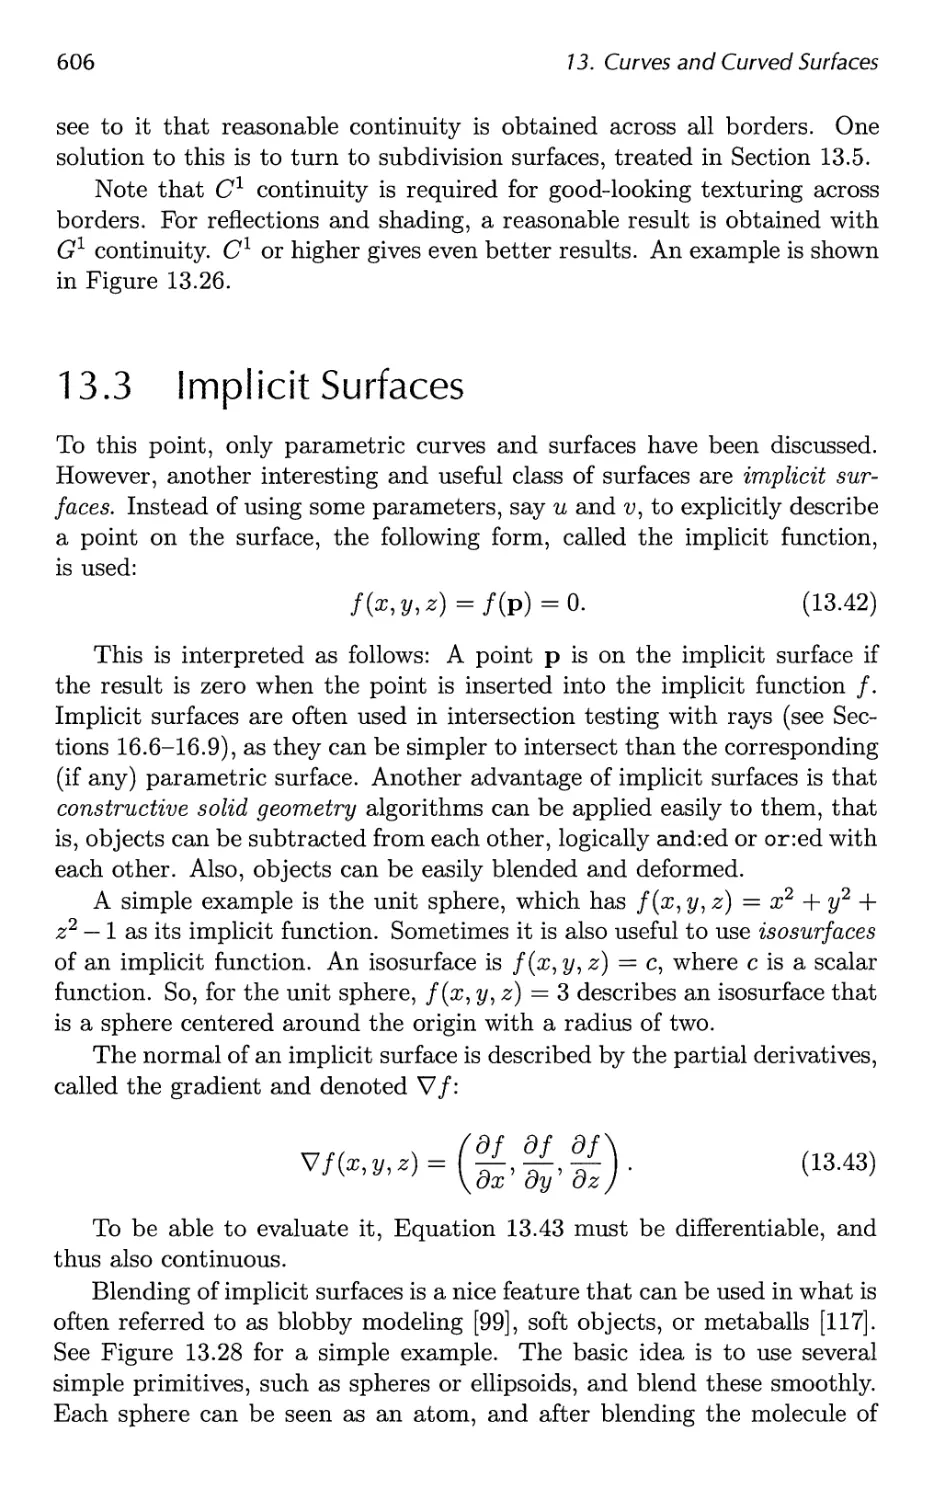 13.3 Implicit Surfaces